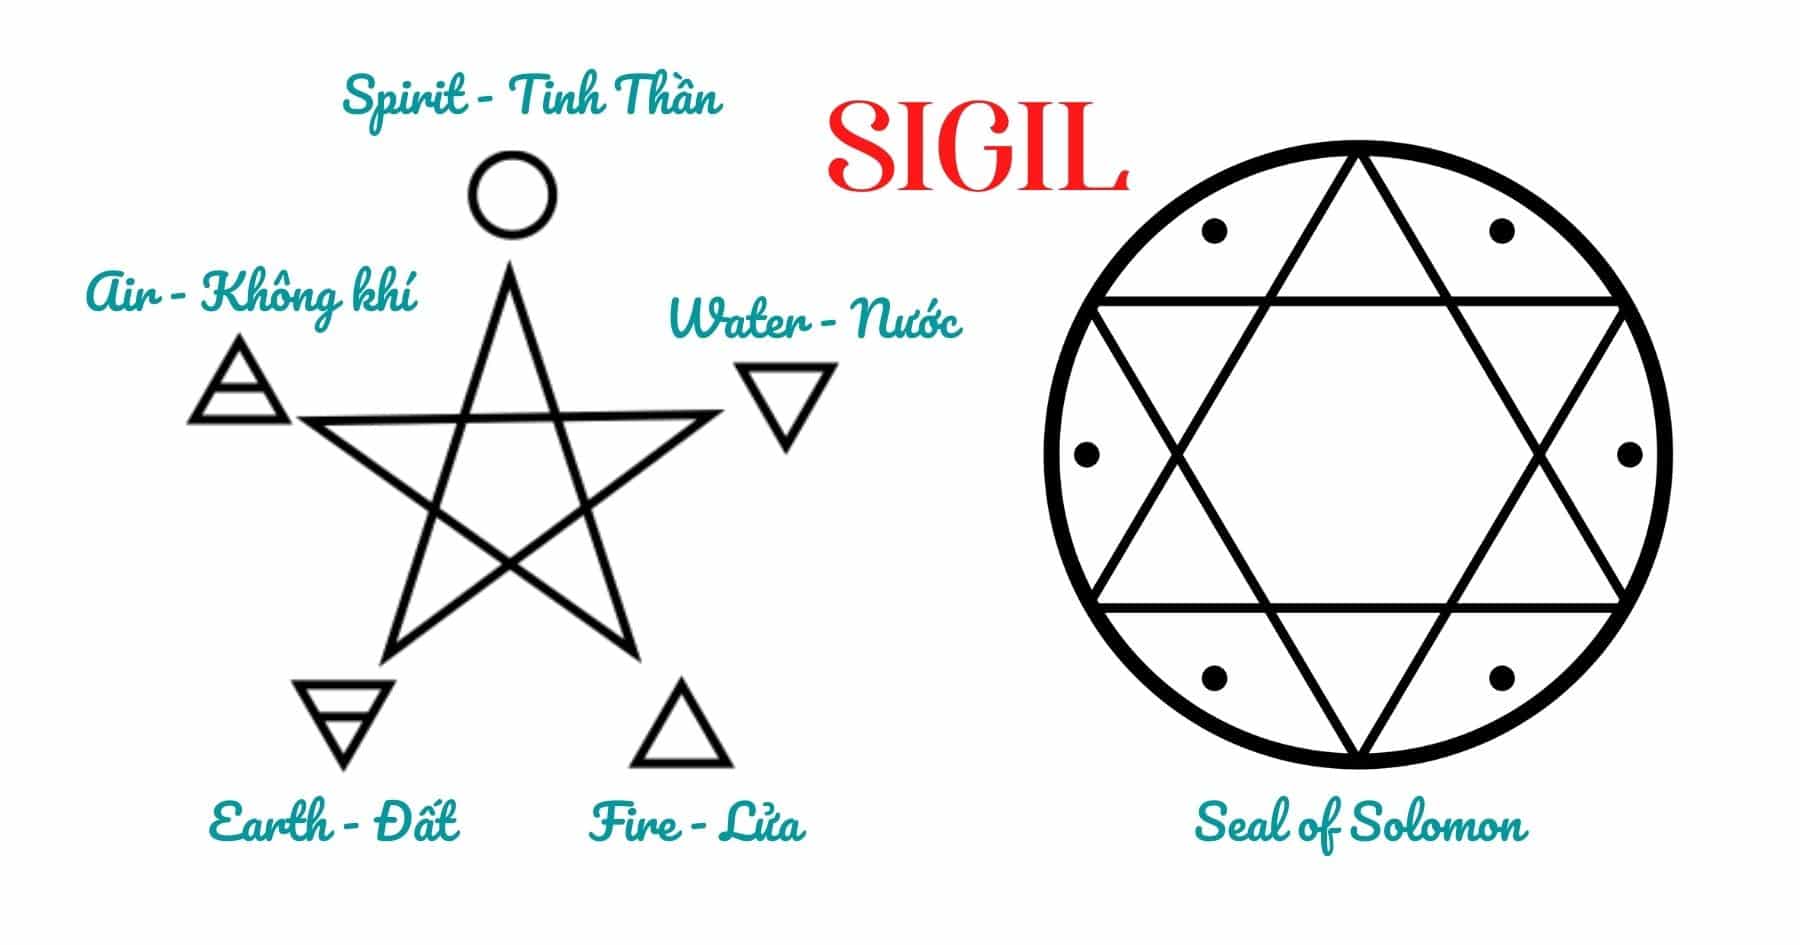 Ý nghĩa của dấu Sigil trong pháp thuật Witch - 2022